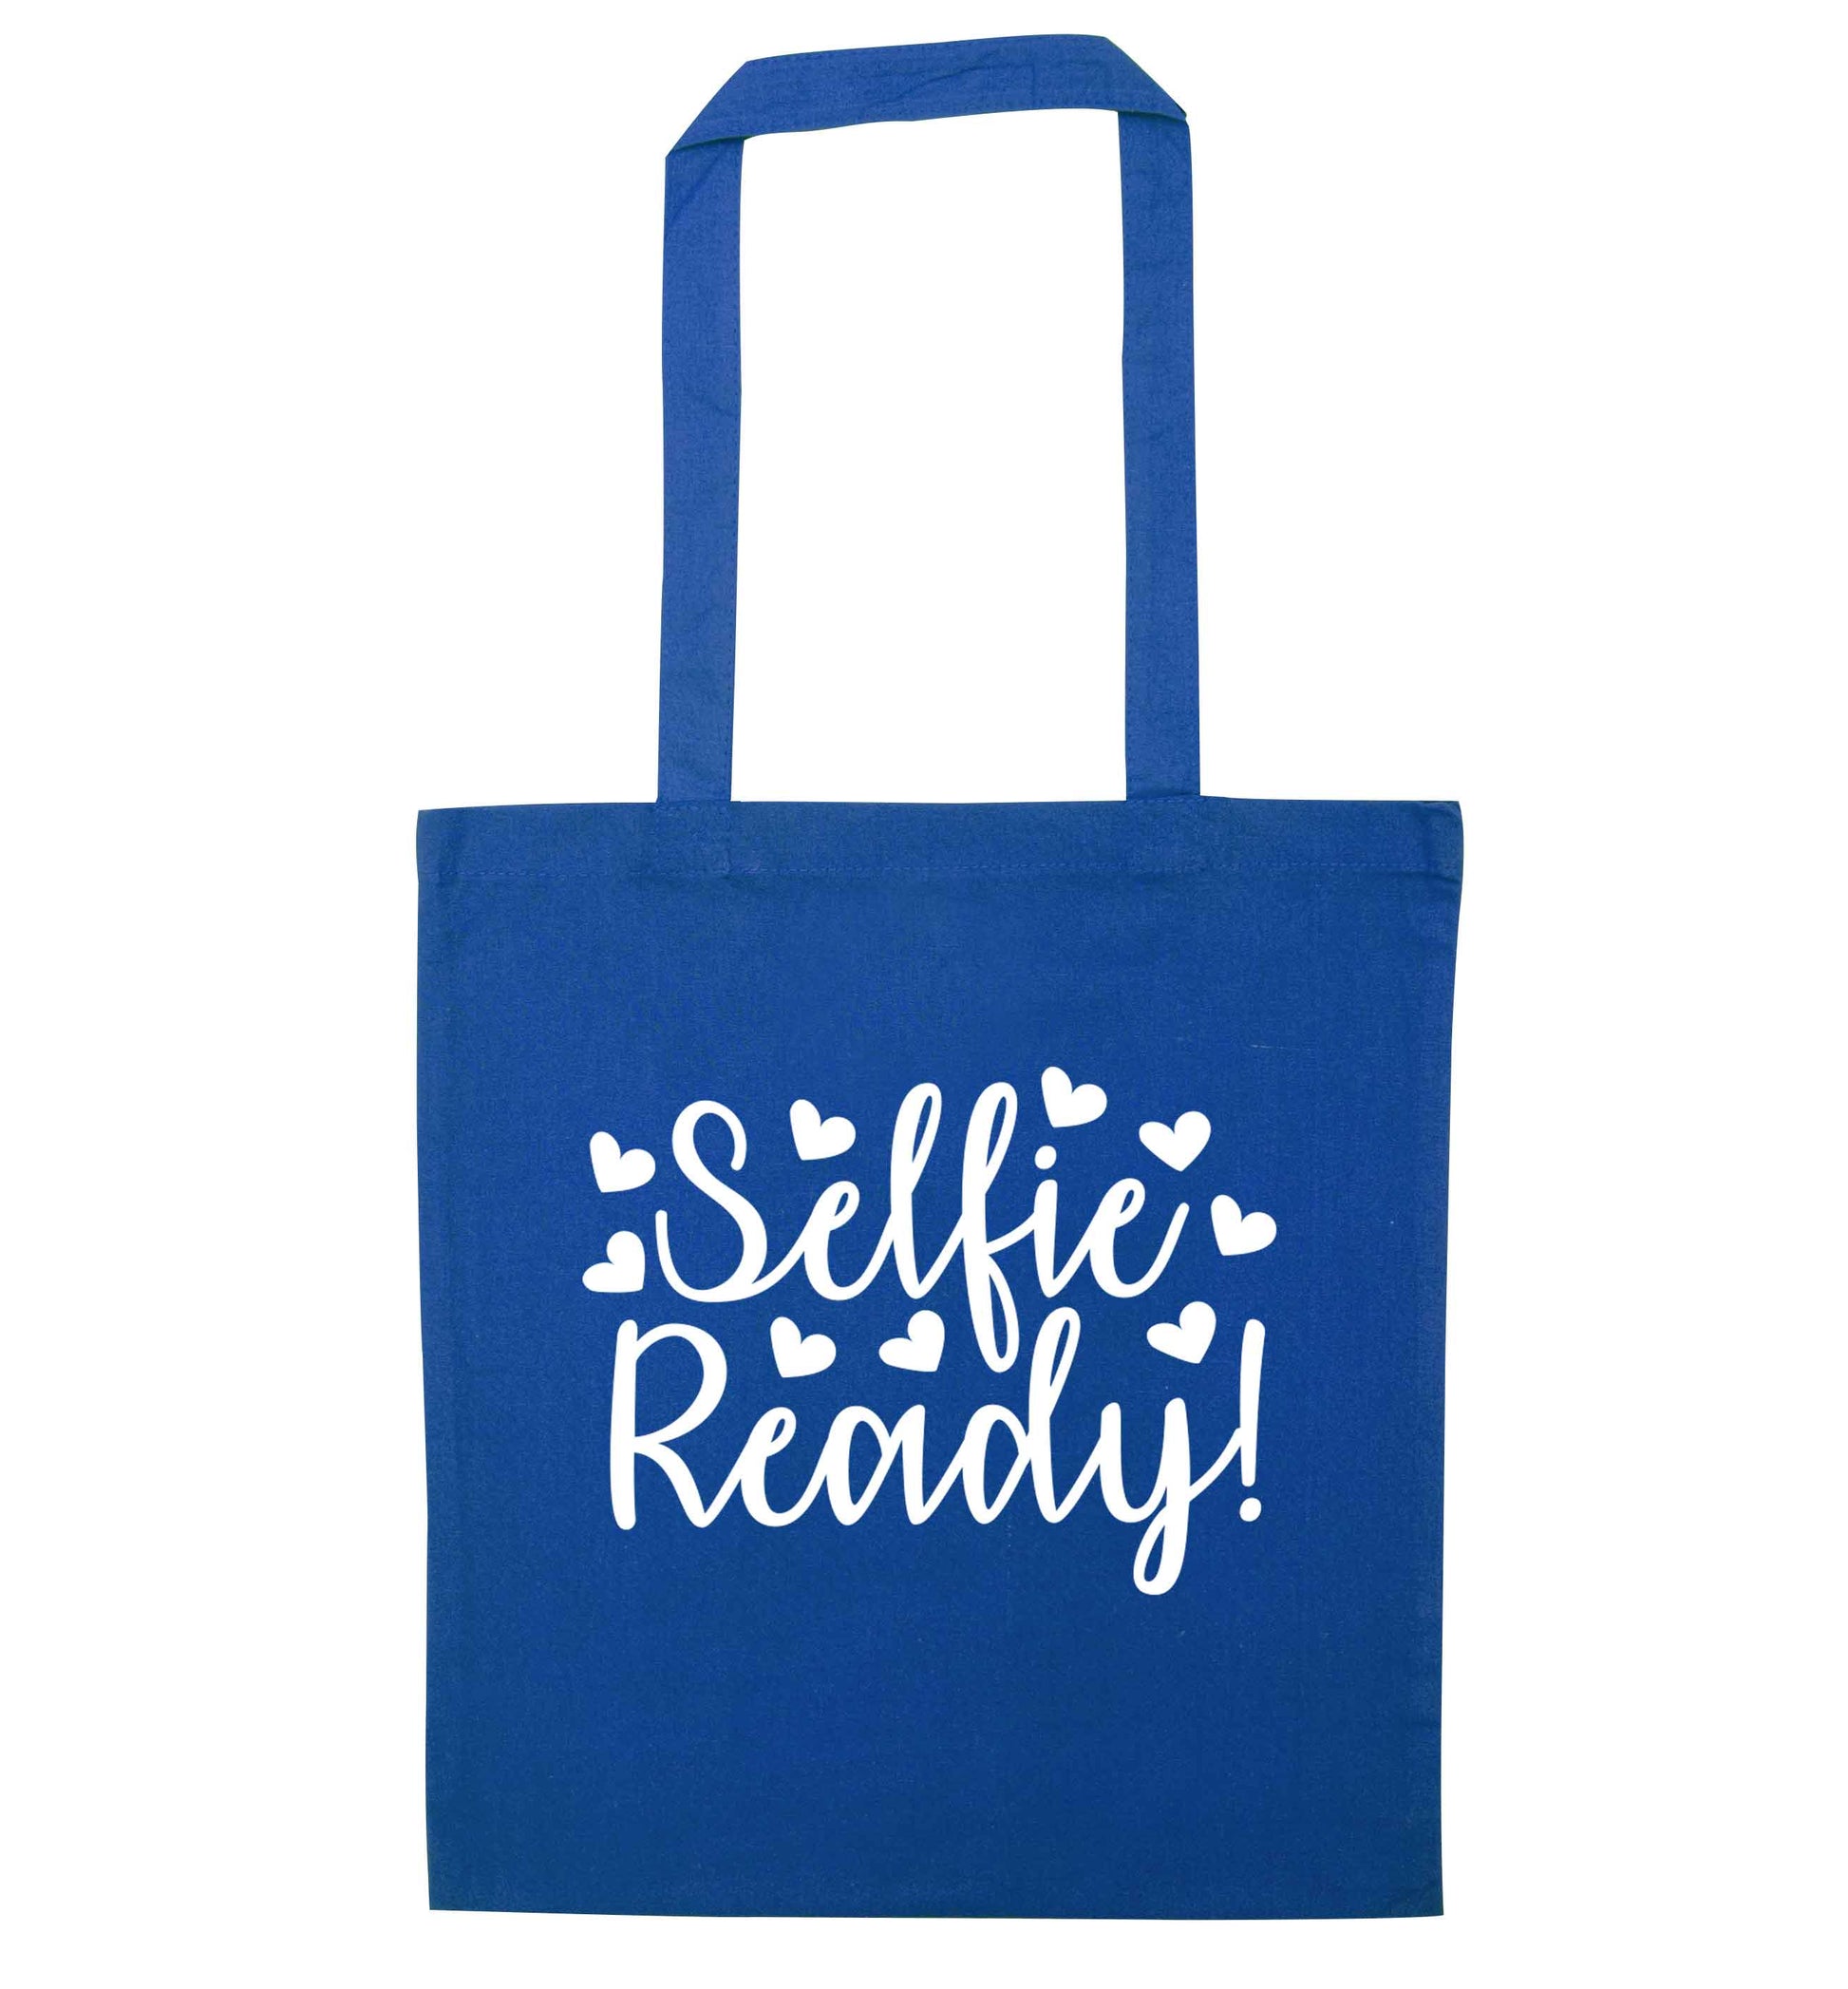 Selfie ready blue tote bag